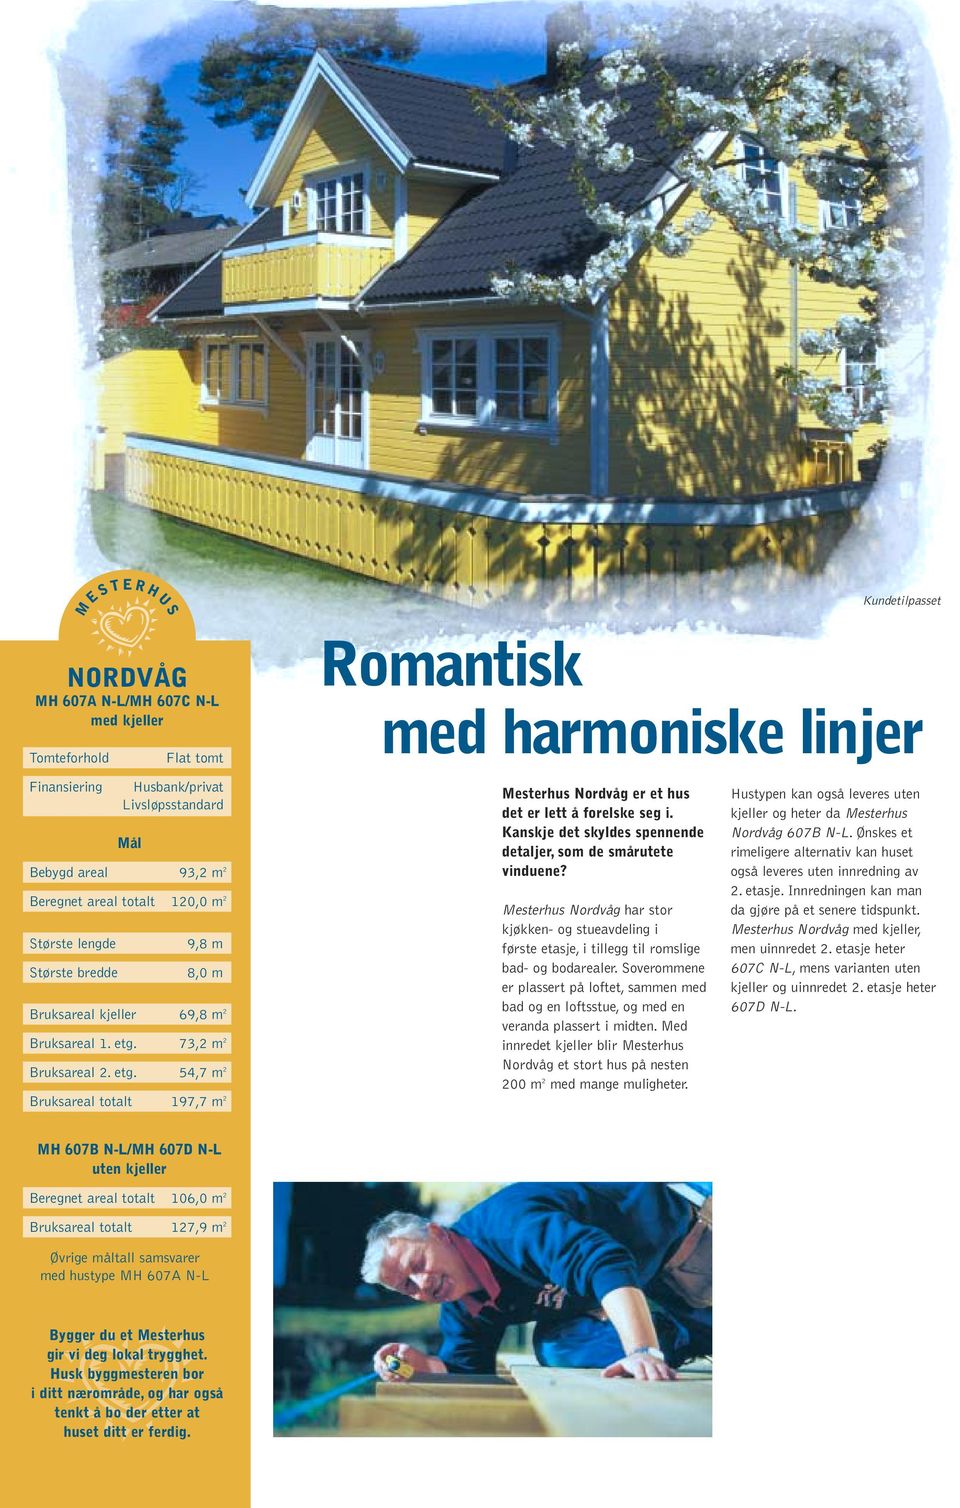 73,2 m 2 Bruksareal 2. etg. 54,7 m 2 Bruksareal totalt 197,7 m 2 Romantisk med harmoniske linjer Mesterhus Nordvåg er et hus det er lett å forelske seg i.